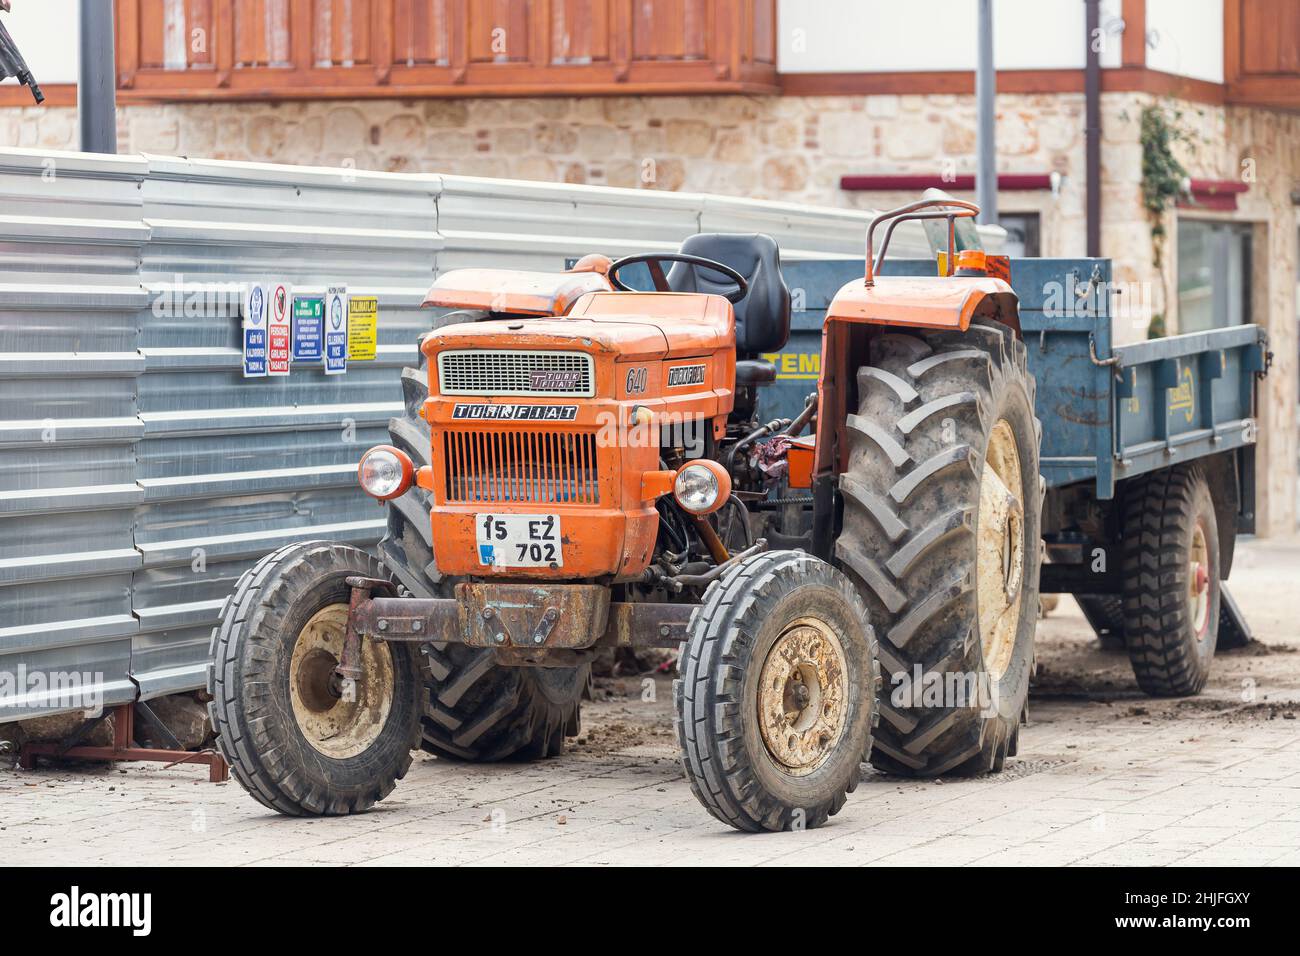 Side, Turquie - 22 janvier 2022 : le vieux tracteur orange de la marque Turk Fiat 640 est stationné dans la rue par une chaude journée d'été sur fond de bui Banque D'Images